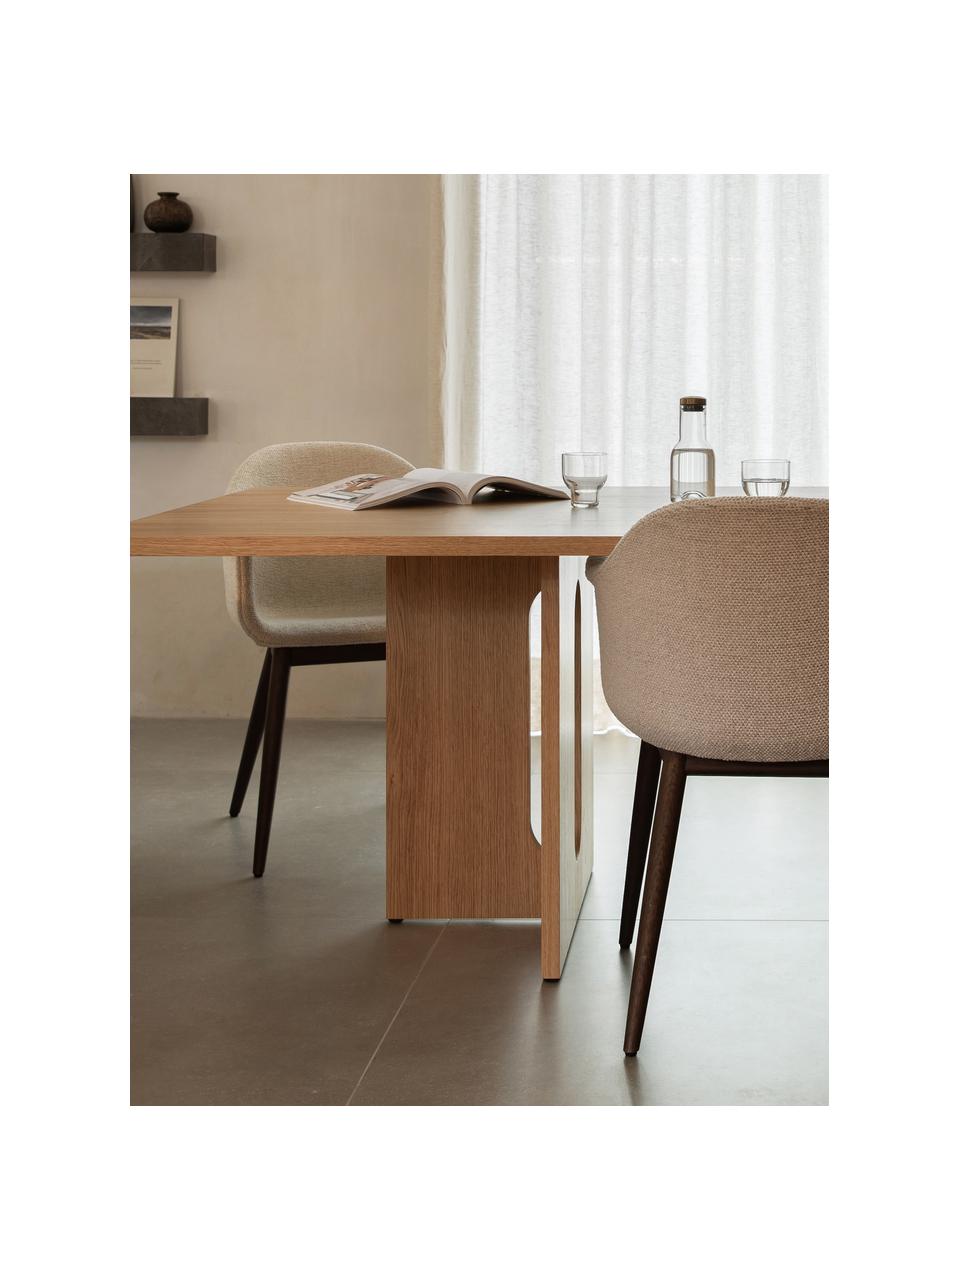 Svetlo morený jedálenský stôl Androgyne, rôzne veľkosti, Drevovláknitá doska strednej hustoty (MDF) s dyhou z dubového dreva, Drevo, svetlo morené, Š 280 x H 110 cm